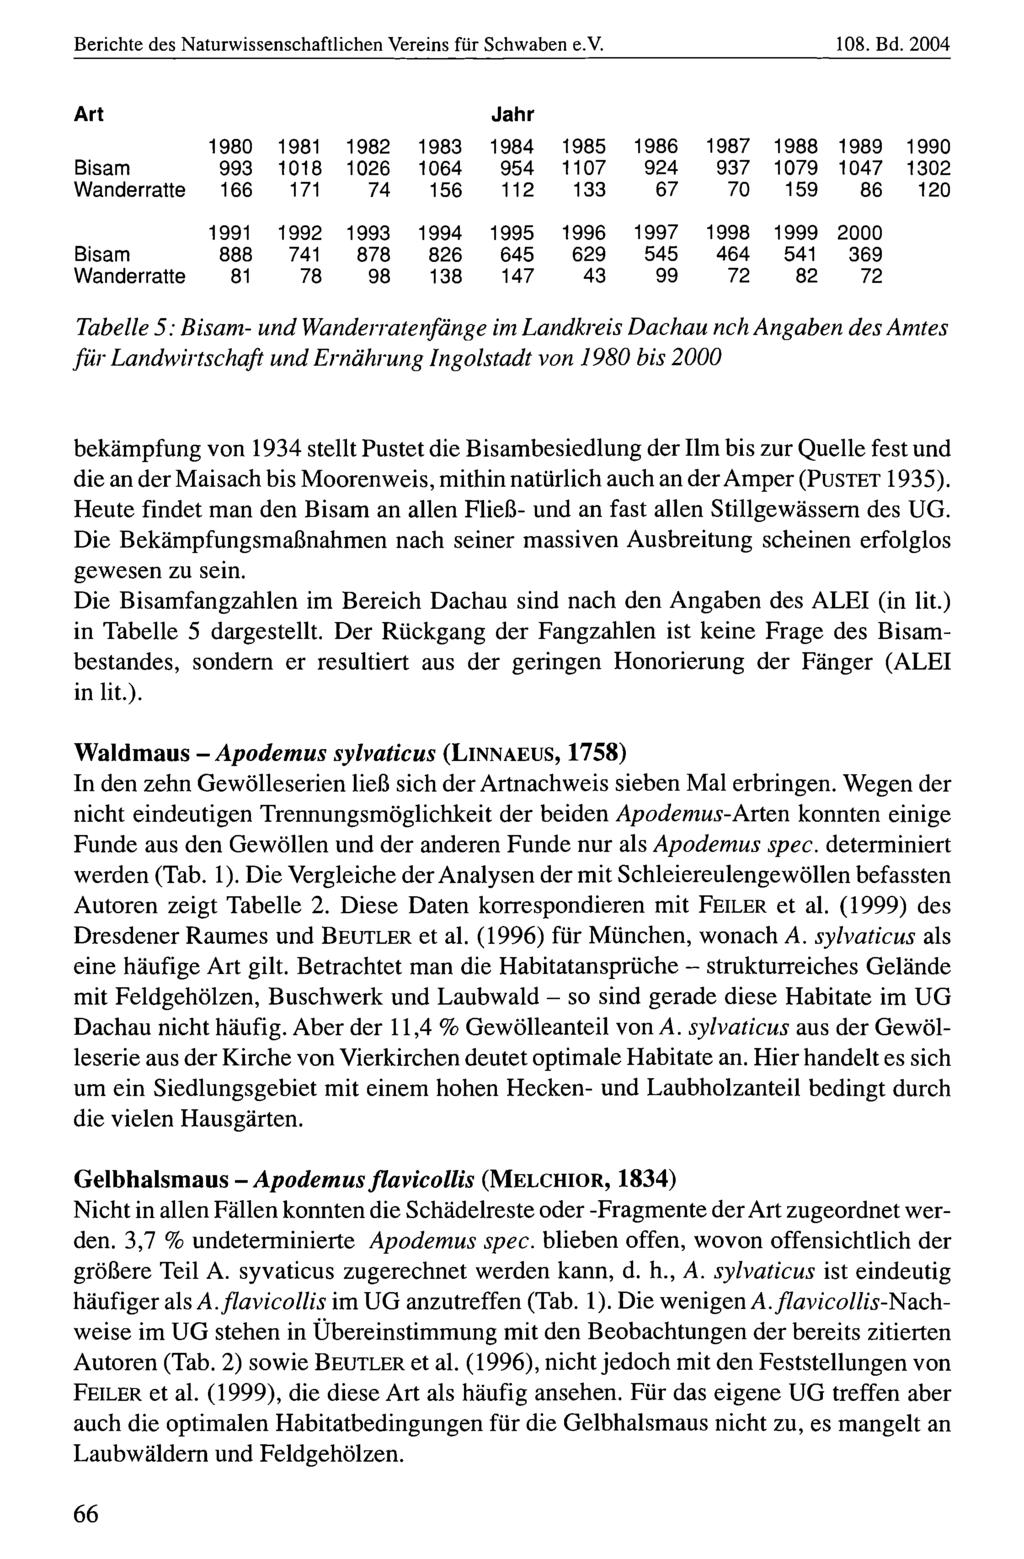 Berichte des Naturwissenschaftlichen Naturwissenschaftlicher Vereins für für Schwaben, download e.v. unter www.biologiezentrum.at 108. Bd.